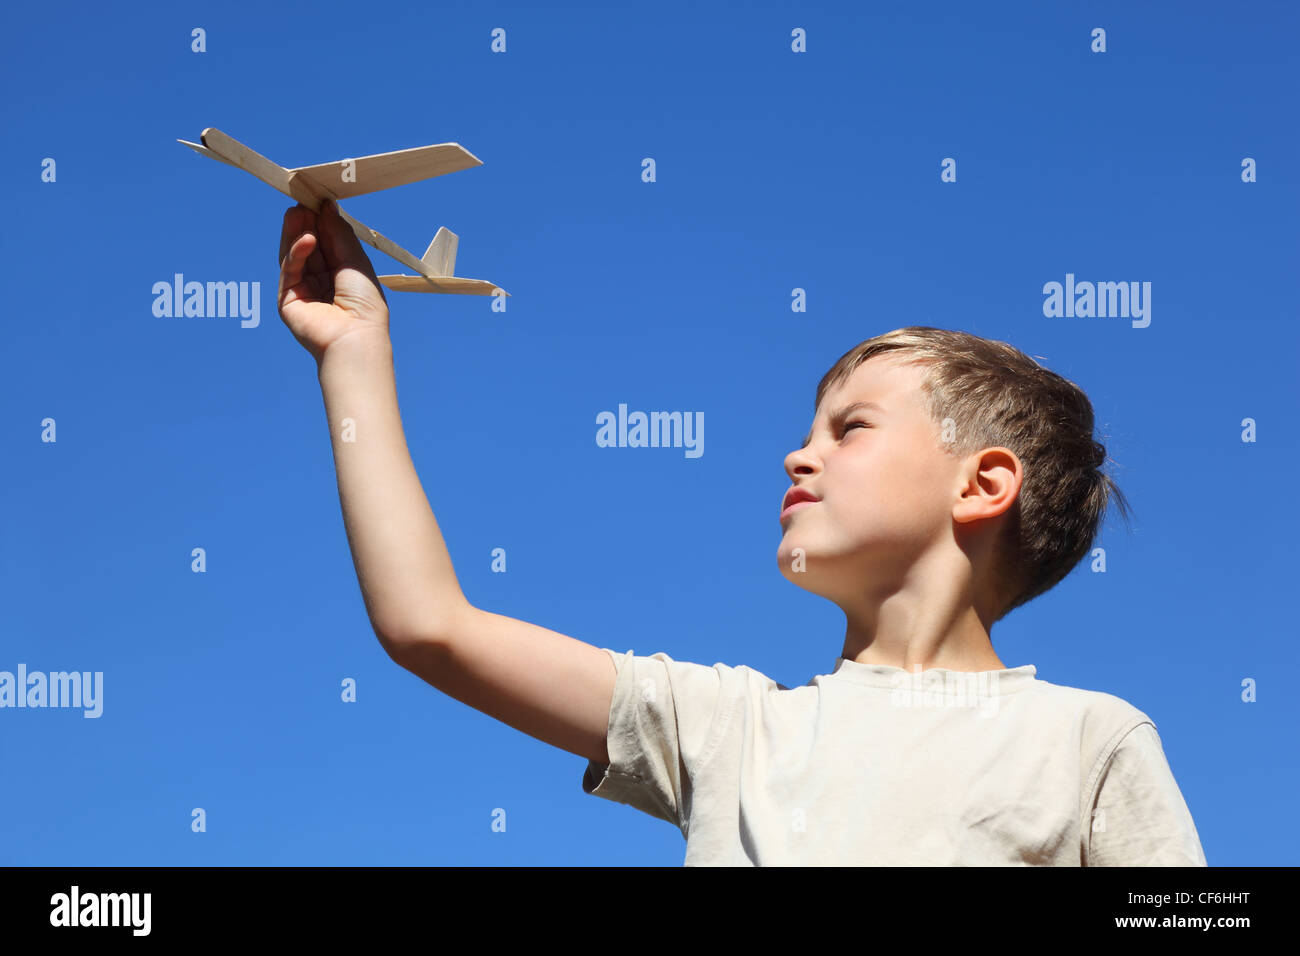 Мальчик с бумажным самолетиком